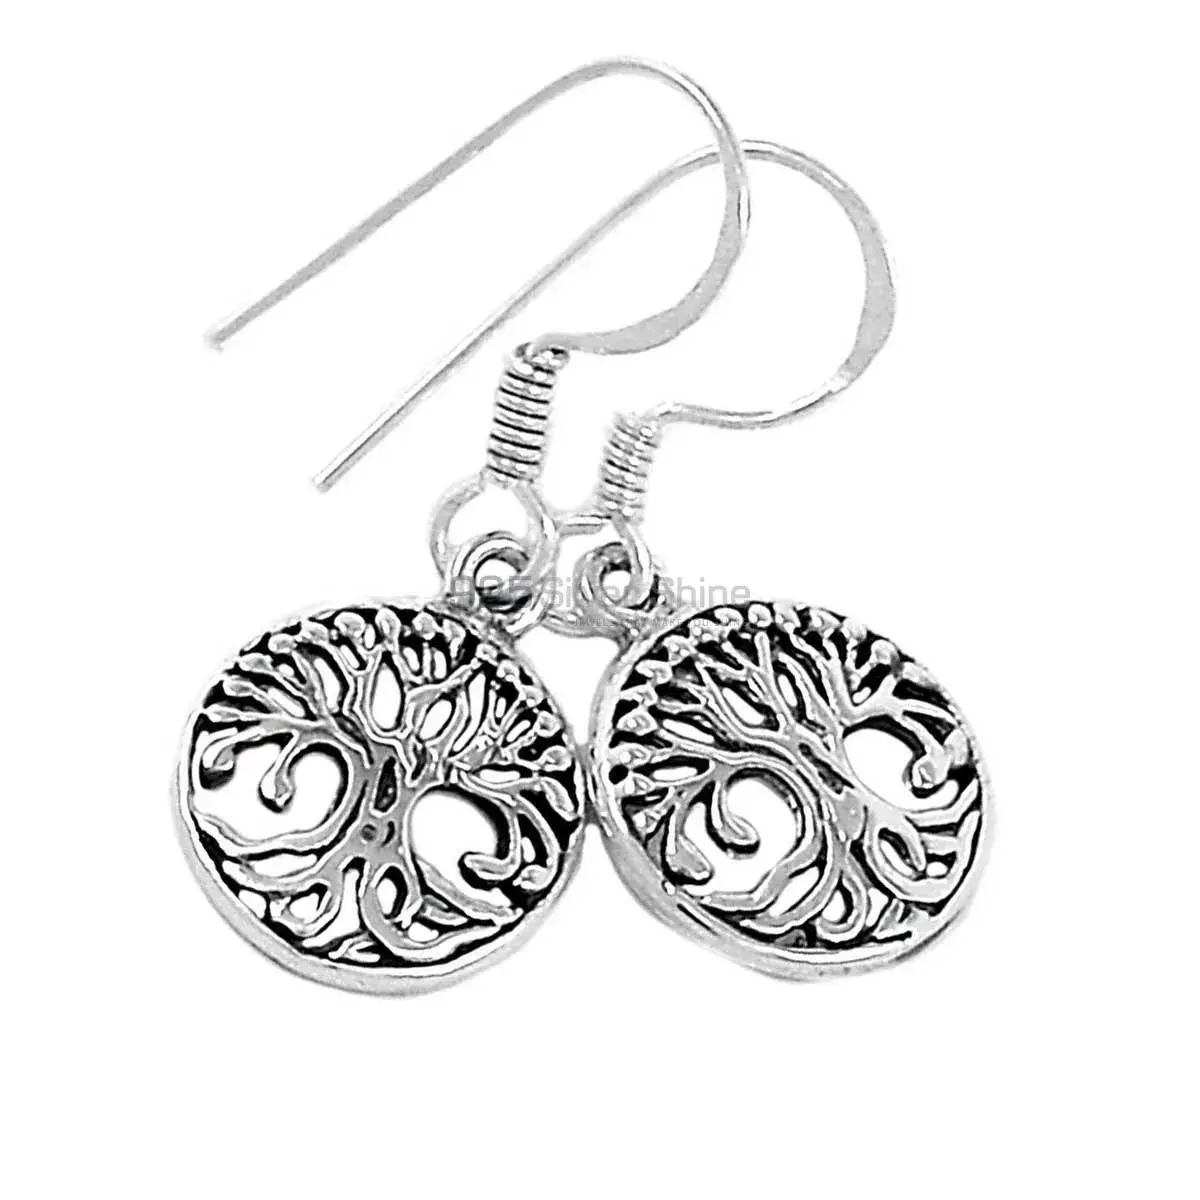 Life Of Tree Design Earrings In Fine 925 Sterling Silver 925SE2900_2